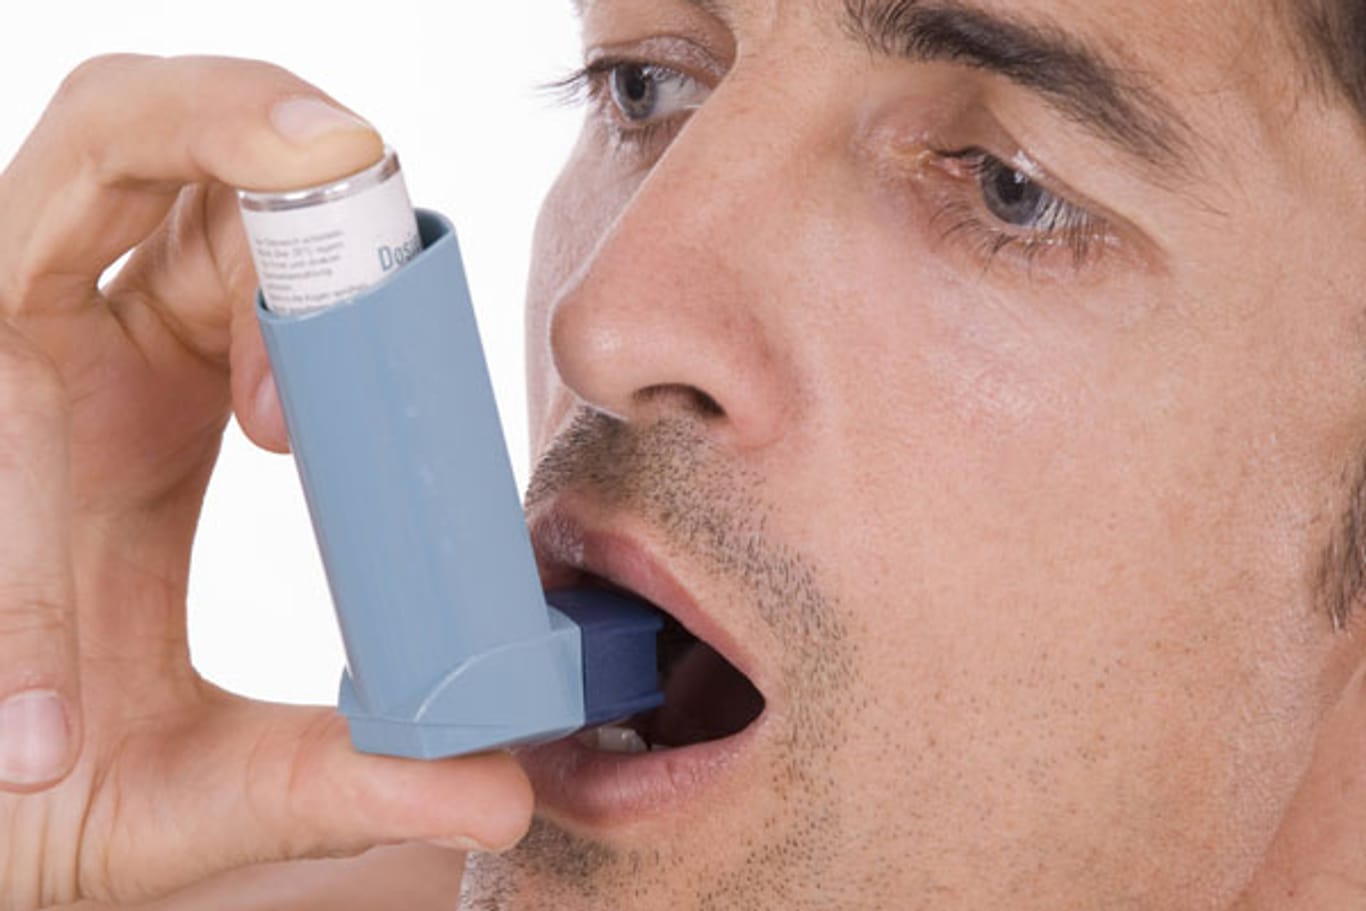 Wer unter Asthma leidet, sollte sein Asthmaspray stets bei sich tragen